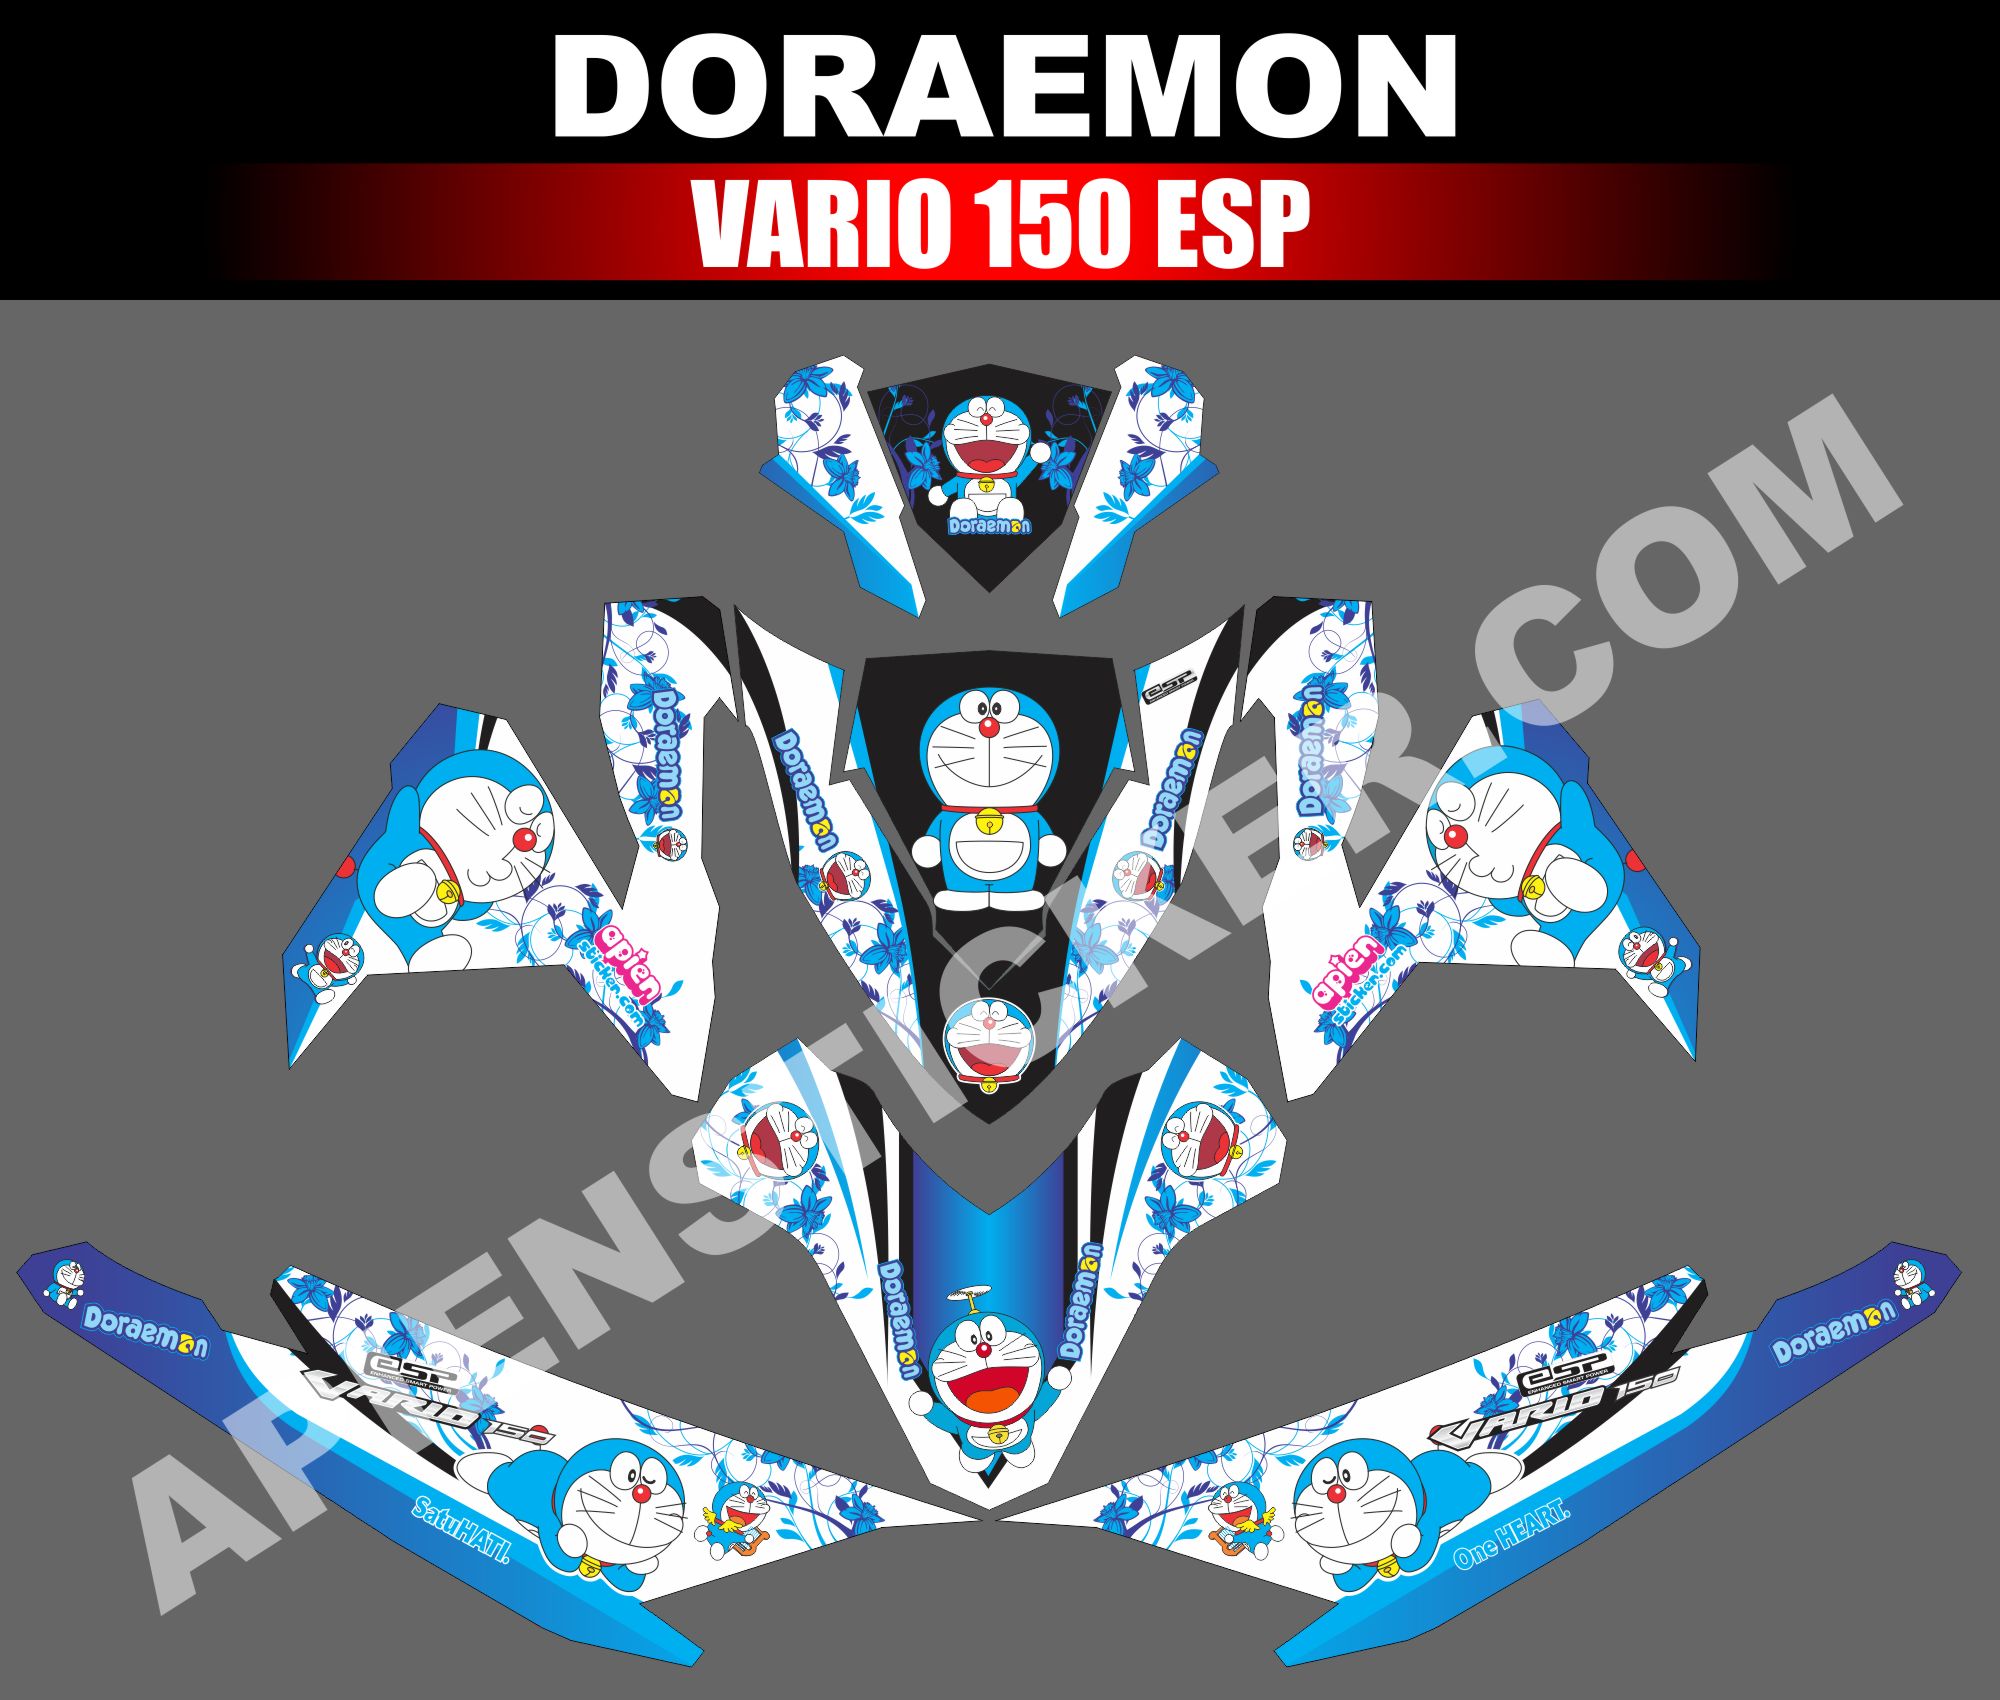 Vario 150 Modif Doraemon. Striping Motor Vario 150 ESP Doraemon